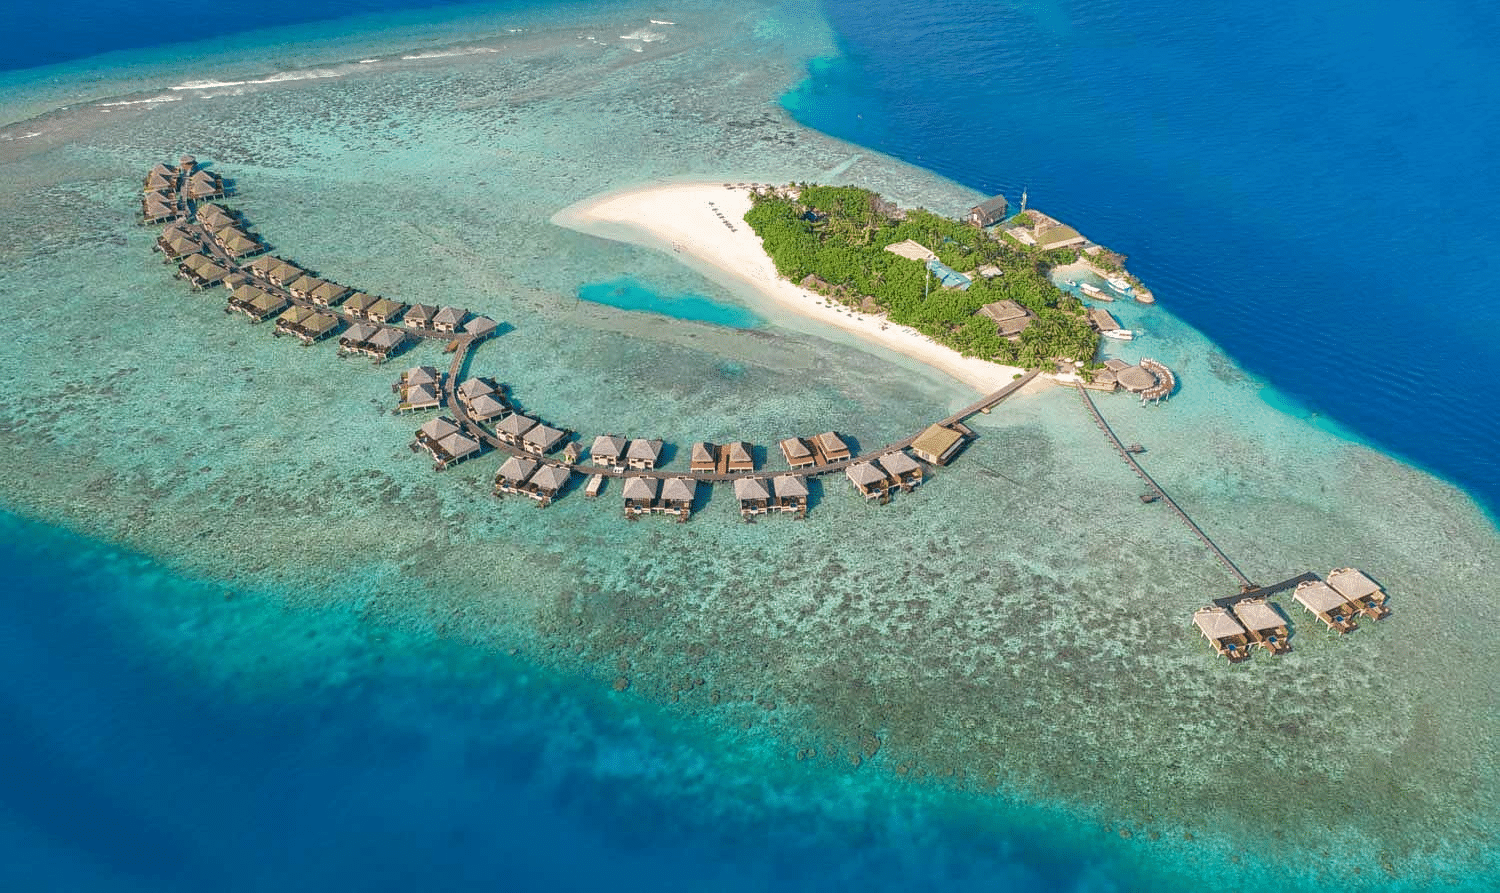 Vaadhoo Island Overview